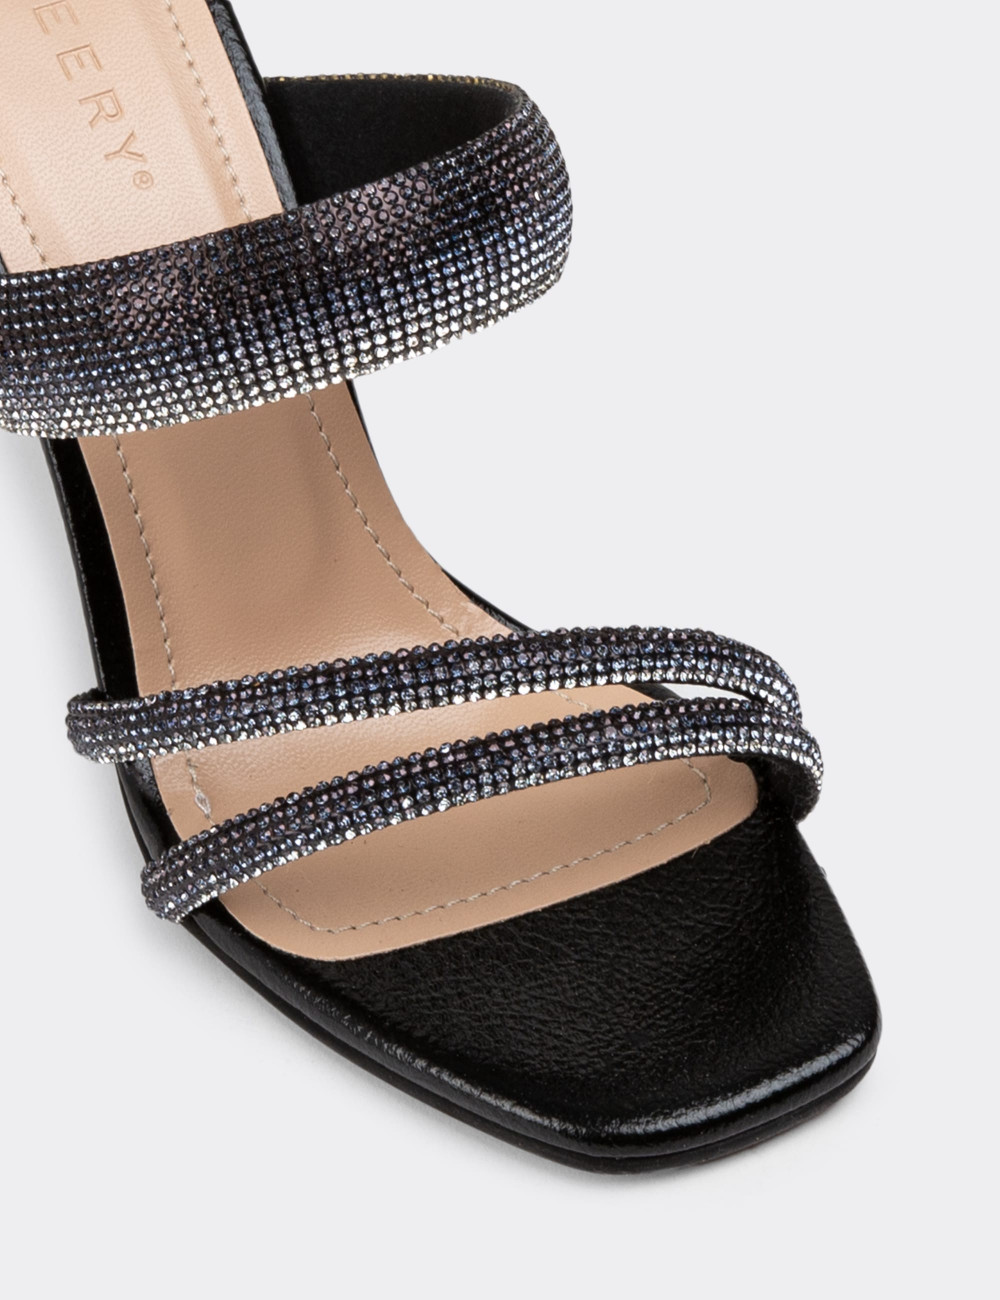 Siyah Topuklu Kadın Abiye Ayakkabı - N5555ZSYHM01